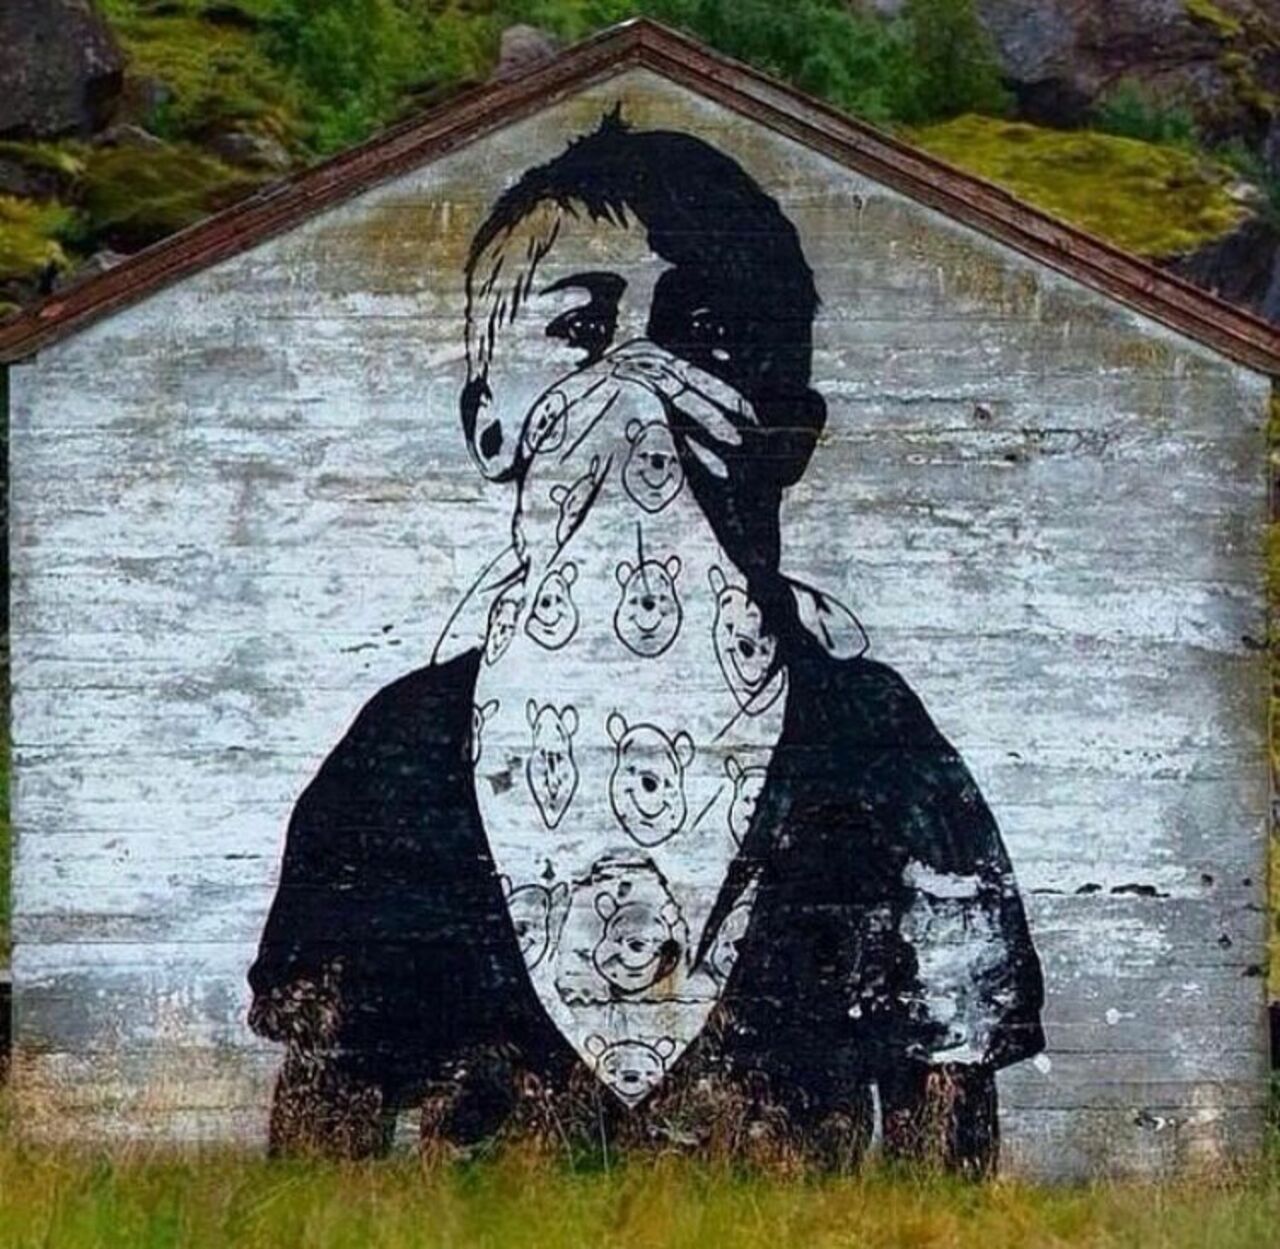 New work by Dolk in Norway #streetart #mural #graffiti #art https://t.co/03mC0UhVll